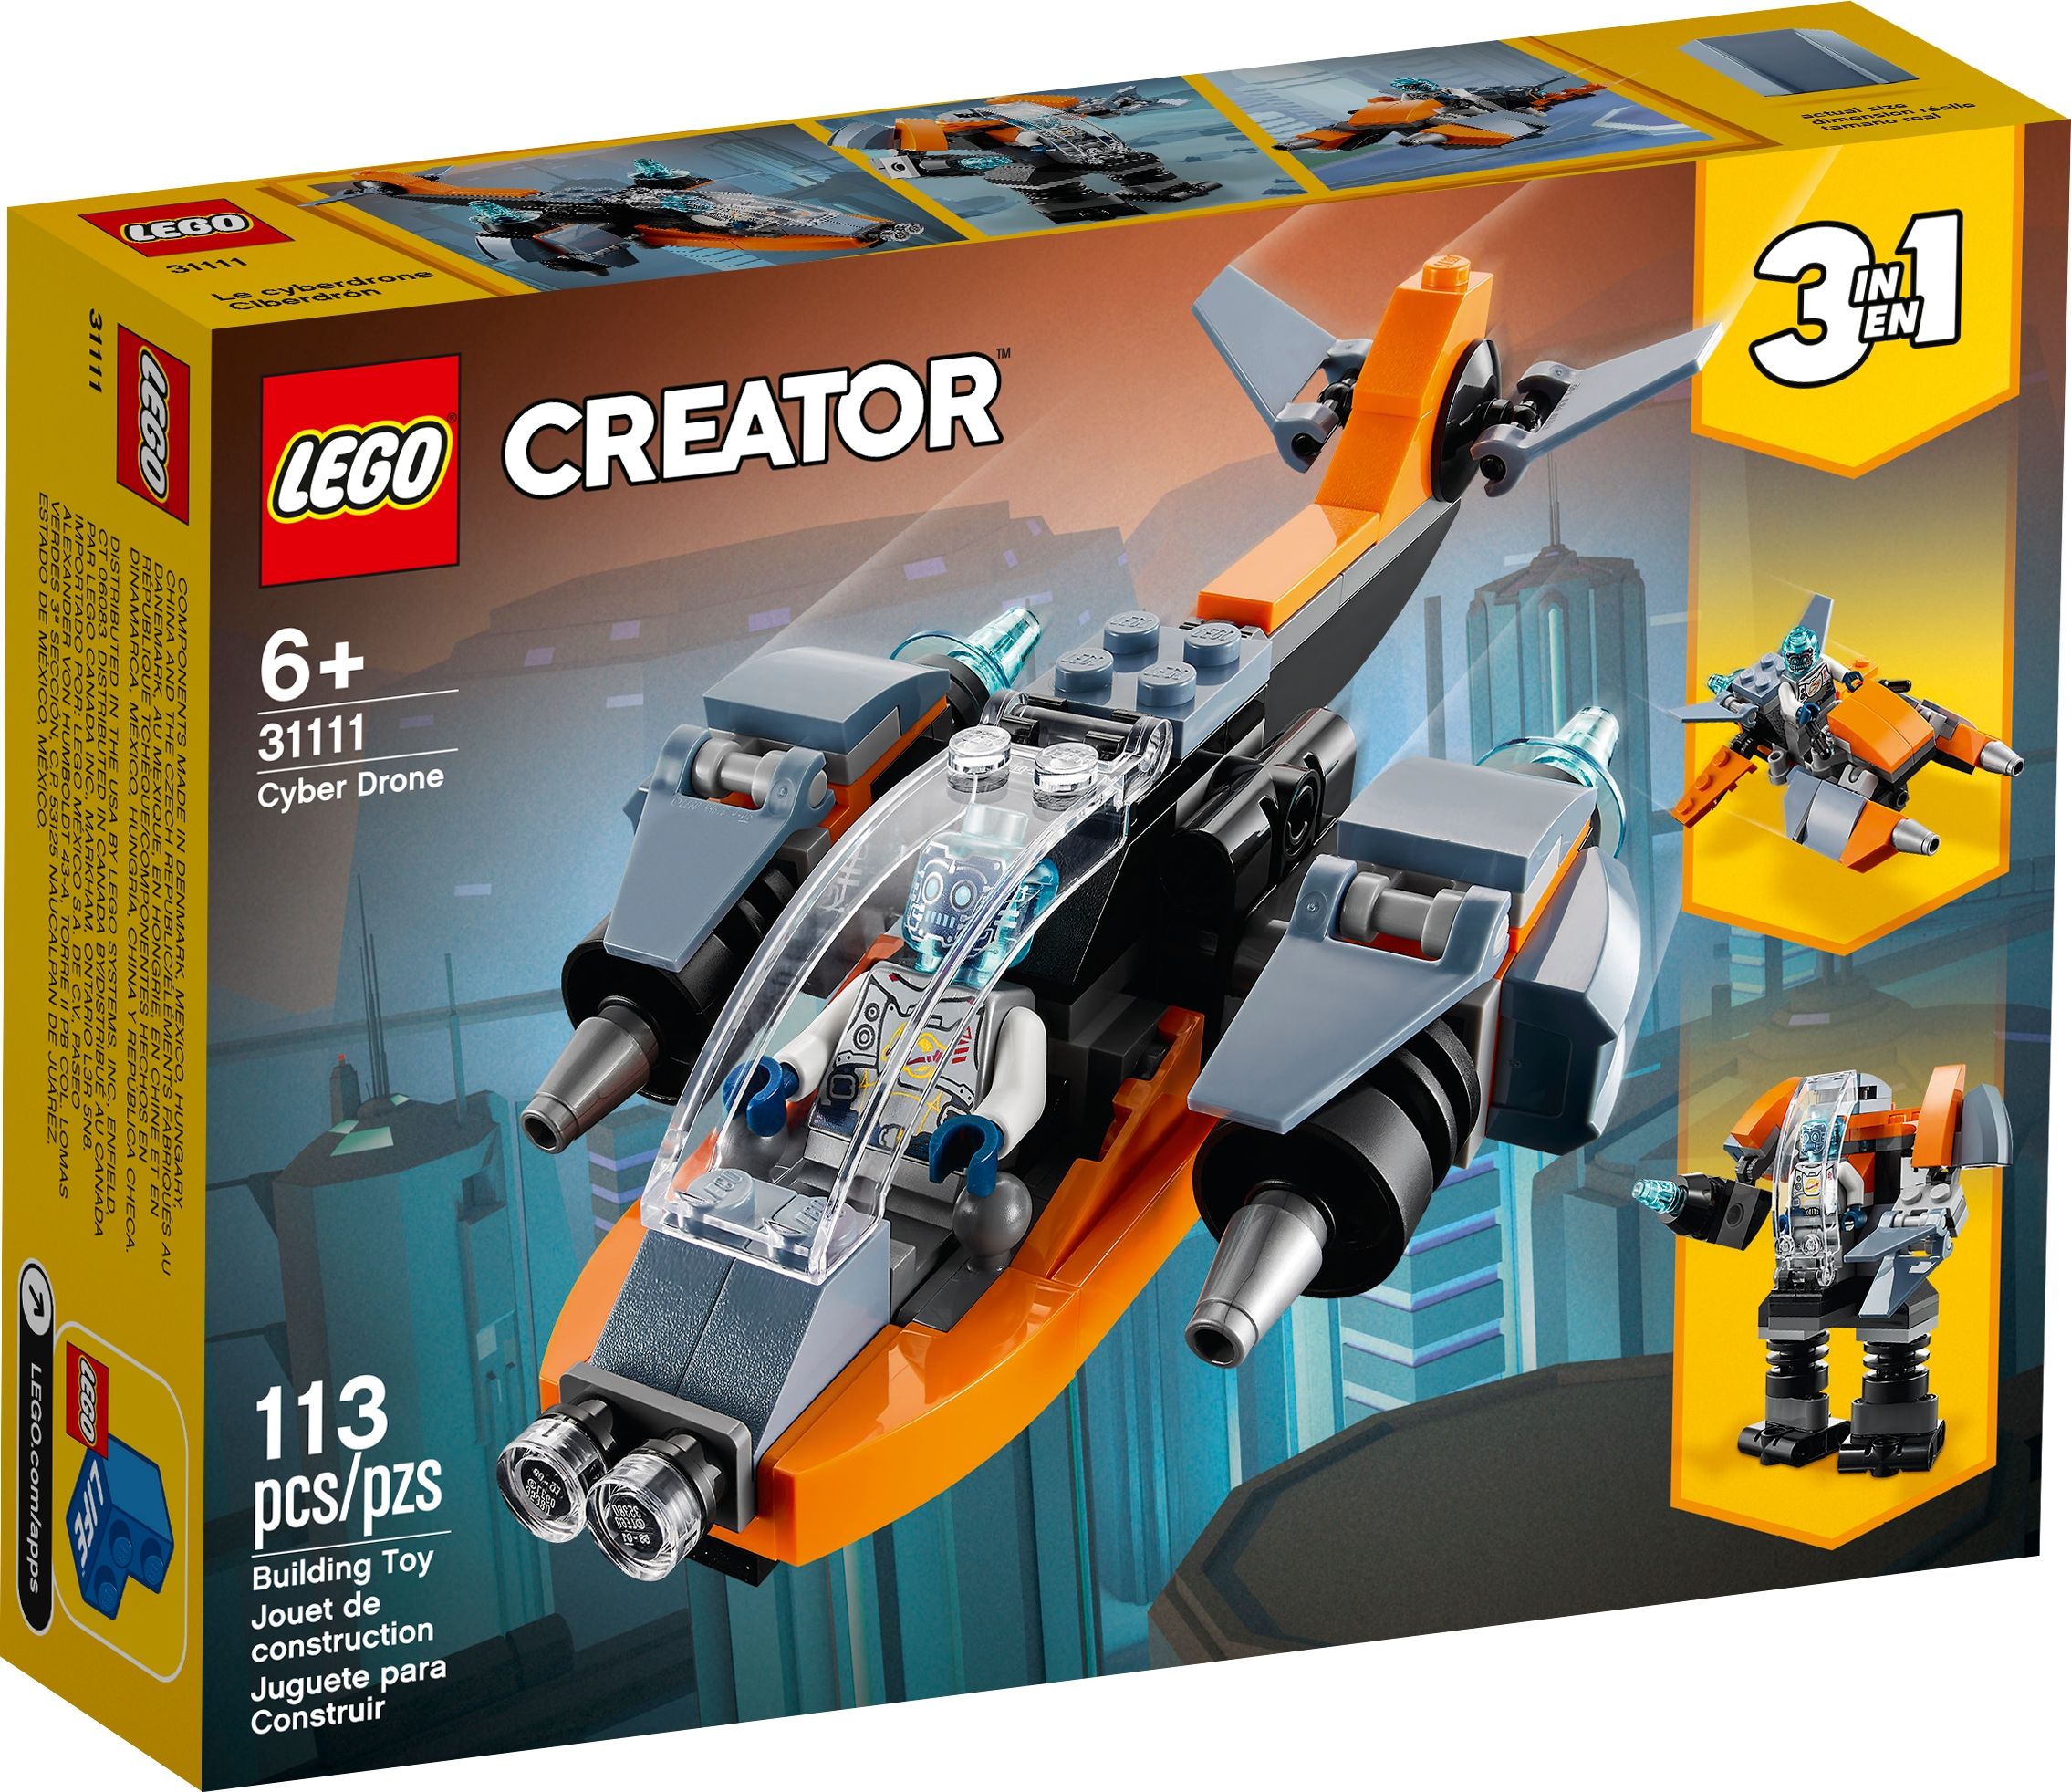 LEGO Creator 31111 Cyber-Drohne LEGO_31111_alt1.jpg